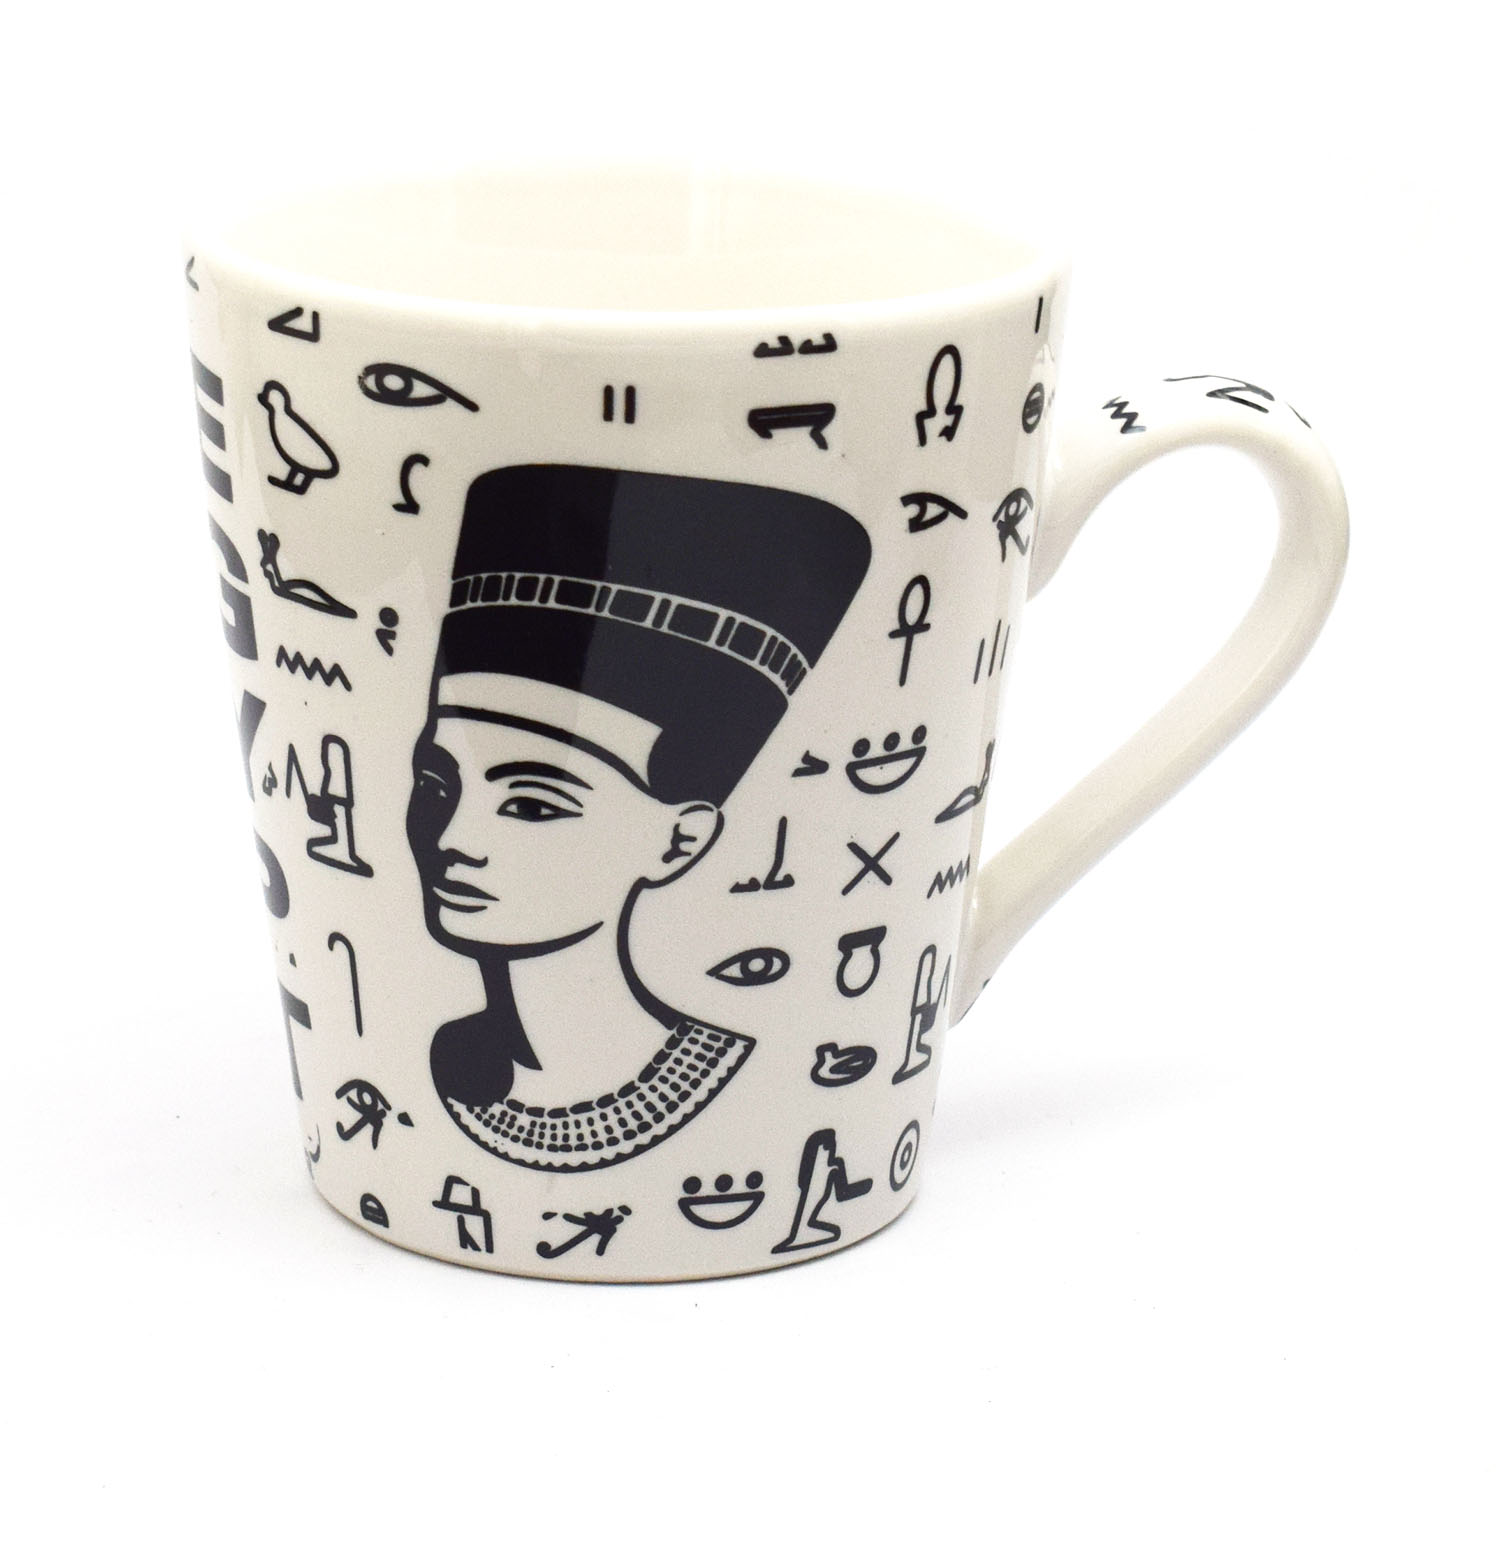 immatgar pharaonic Egyptian Nefrtiti mug Egyptian souvenirs gifts for Women Girls ( White -Black - 300 MM )